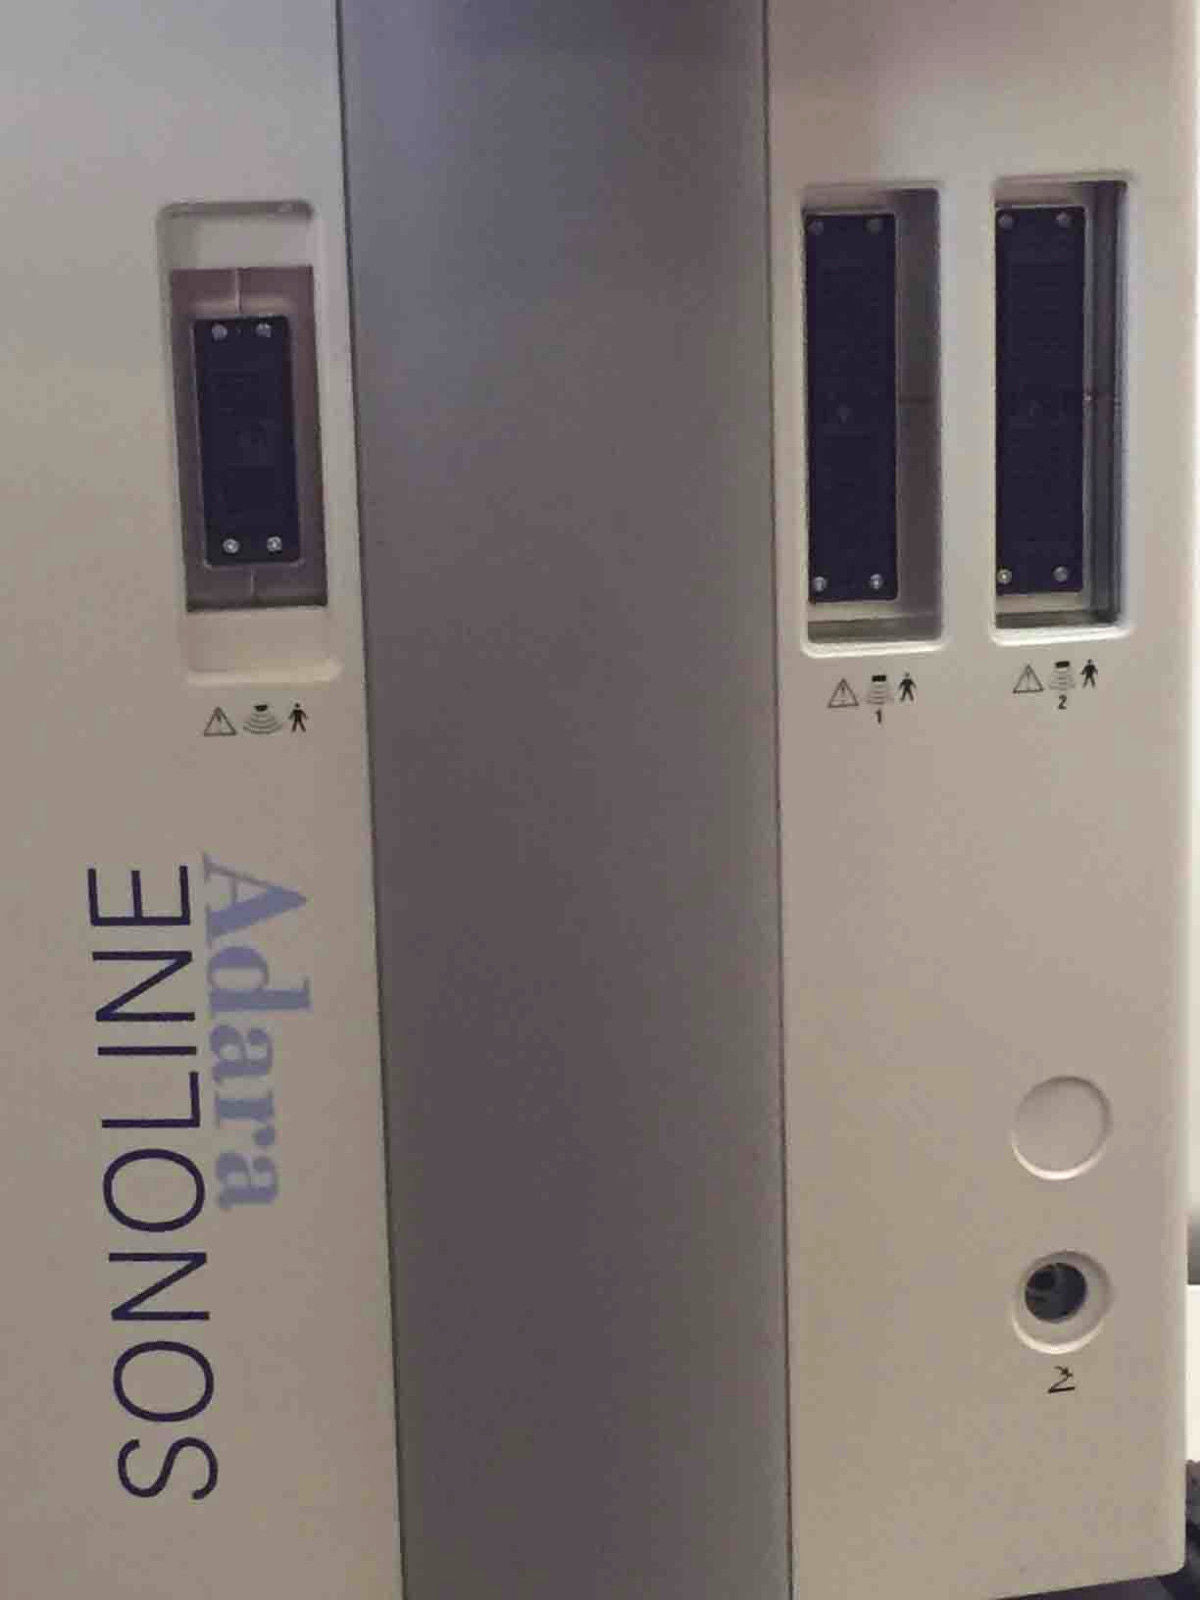 Siemens Sonoline Adara Ultrasound Machine DIAGNOSTIC ULTRASOUND MACHINES FOR SALE